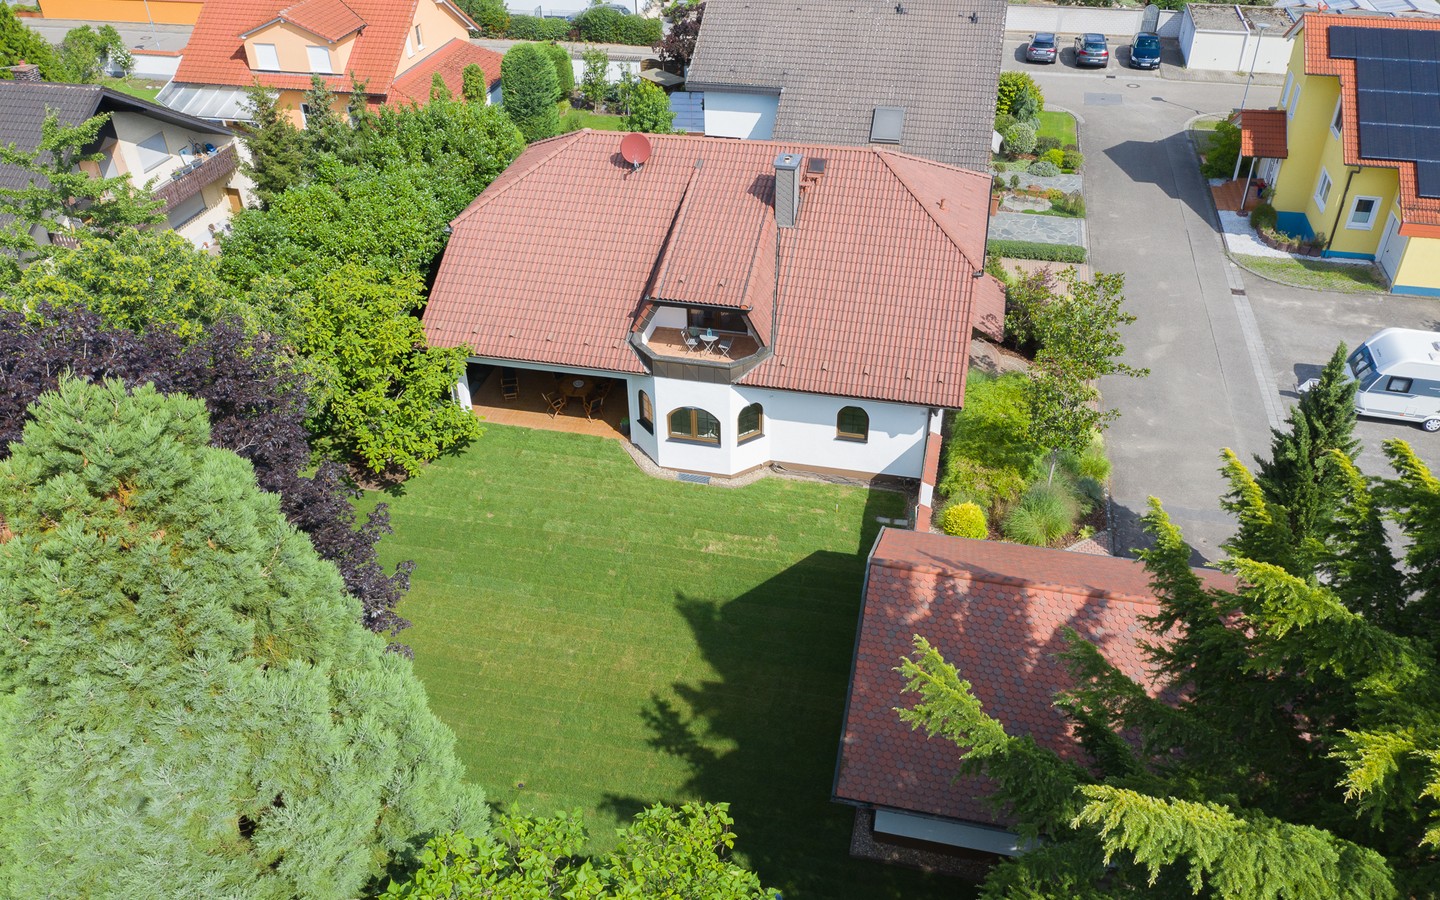 Luftaufnahme - Seltene Gelegenheit: 
Sehr großzügiges Einfamilienhaus mit parkähnlichem Garten in Feldrandlage